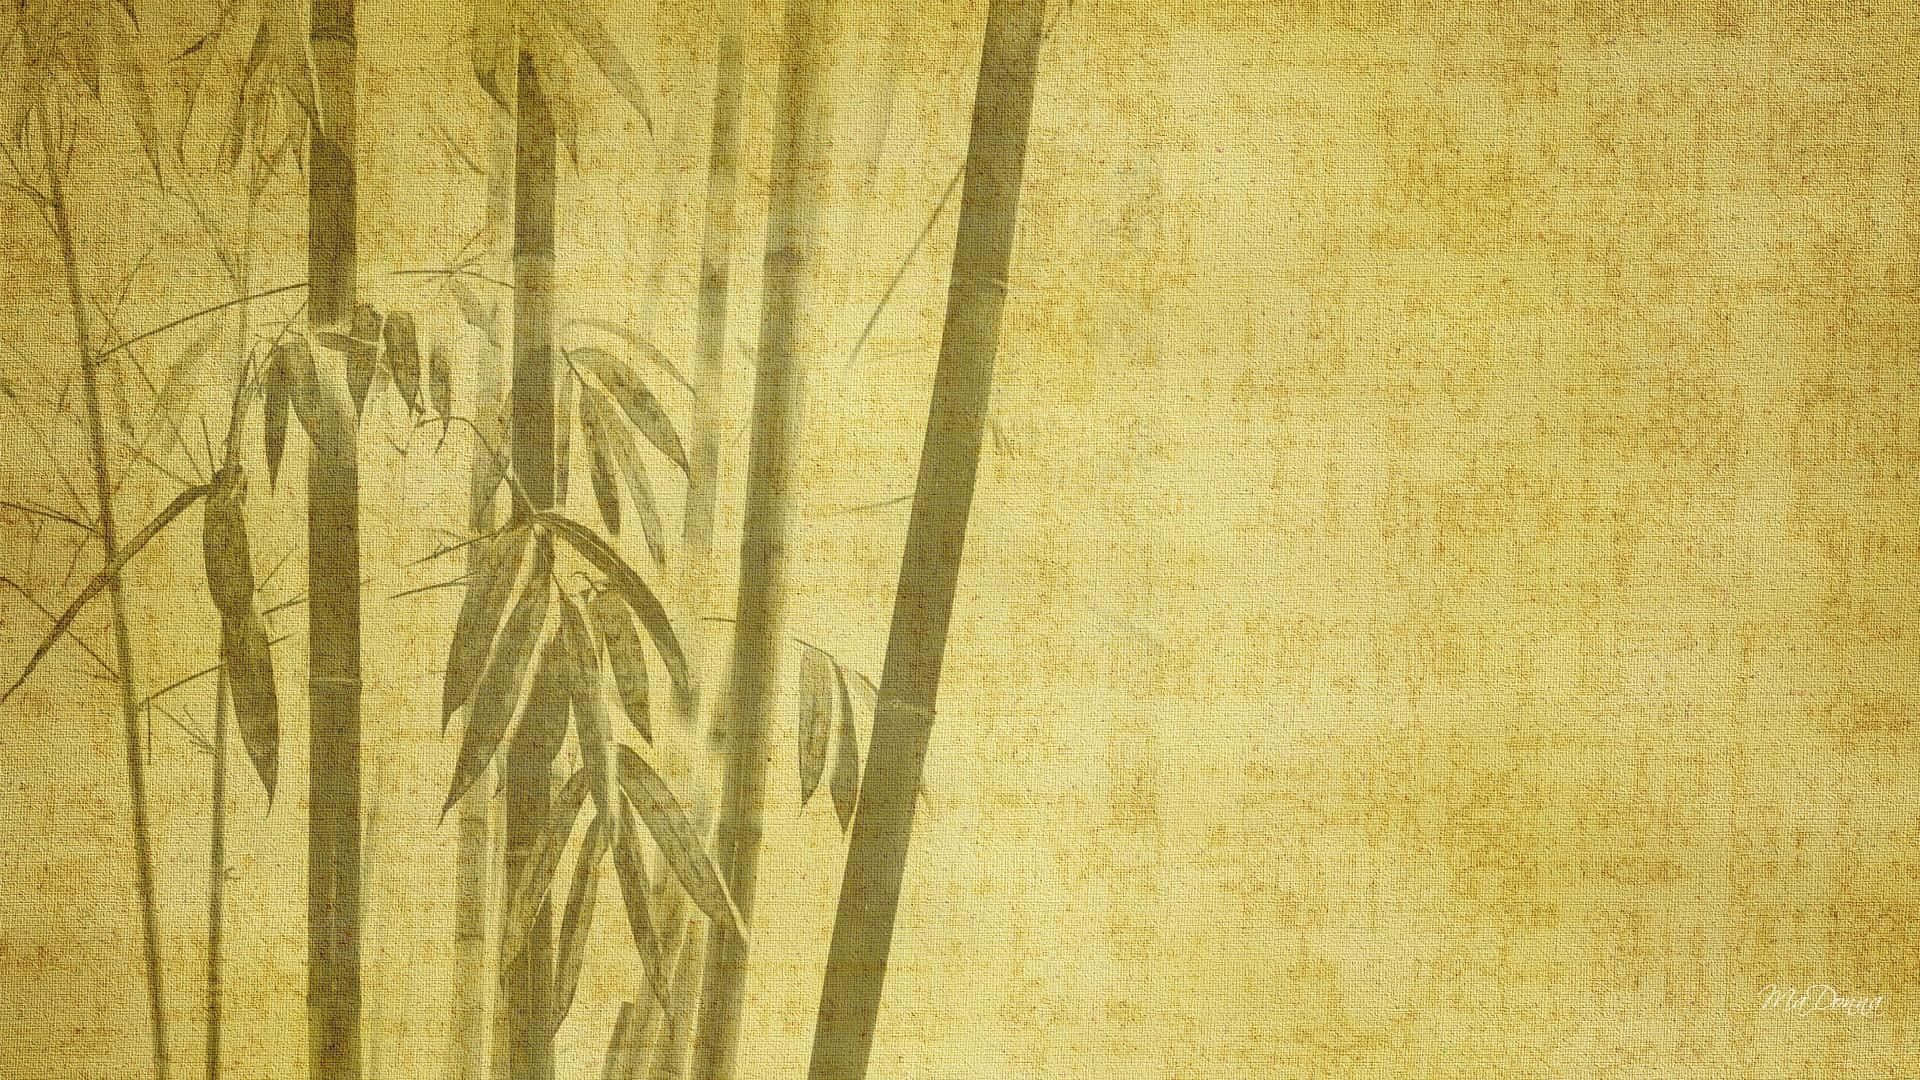 Bosquede Bambú Chino Cerca De Shanghai Fondo de pantalla